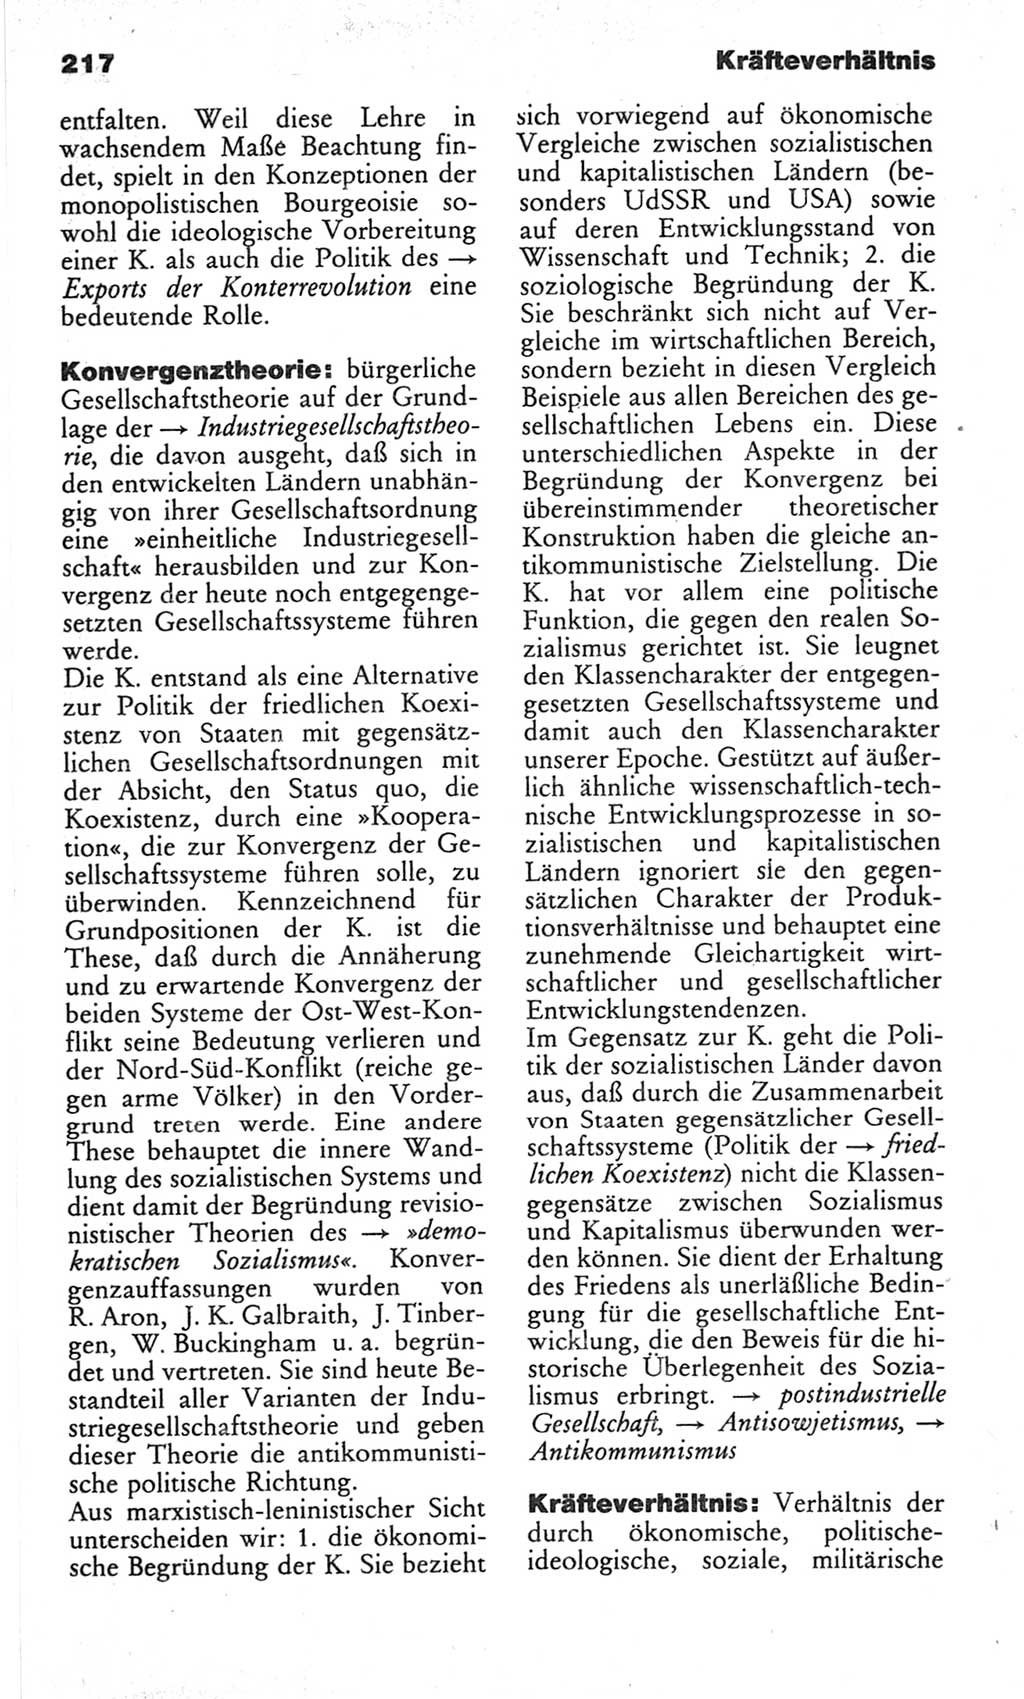 Wörterbuch des wissenschaftlichen Kommunismus [Deutsche Demokratische Republik (DDR)] 1982, Seite 217 (Wb. wiss. Komm. DDR 1982, S. 217)